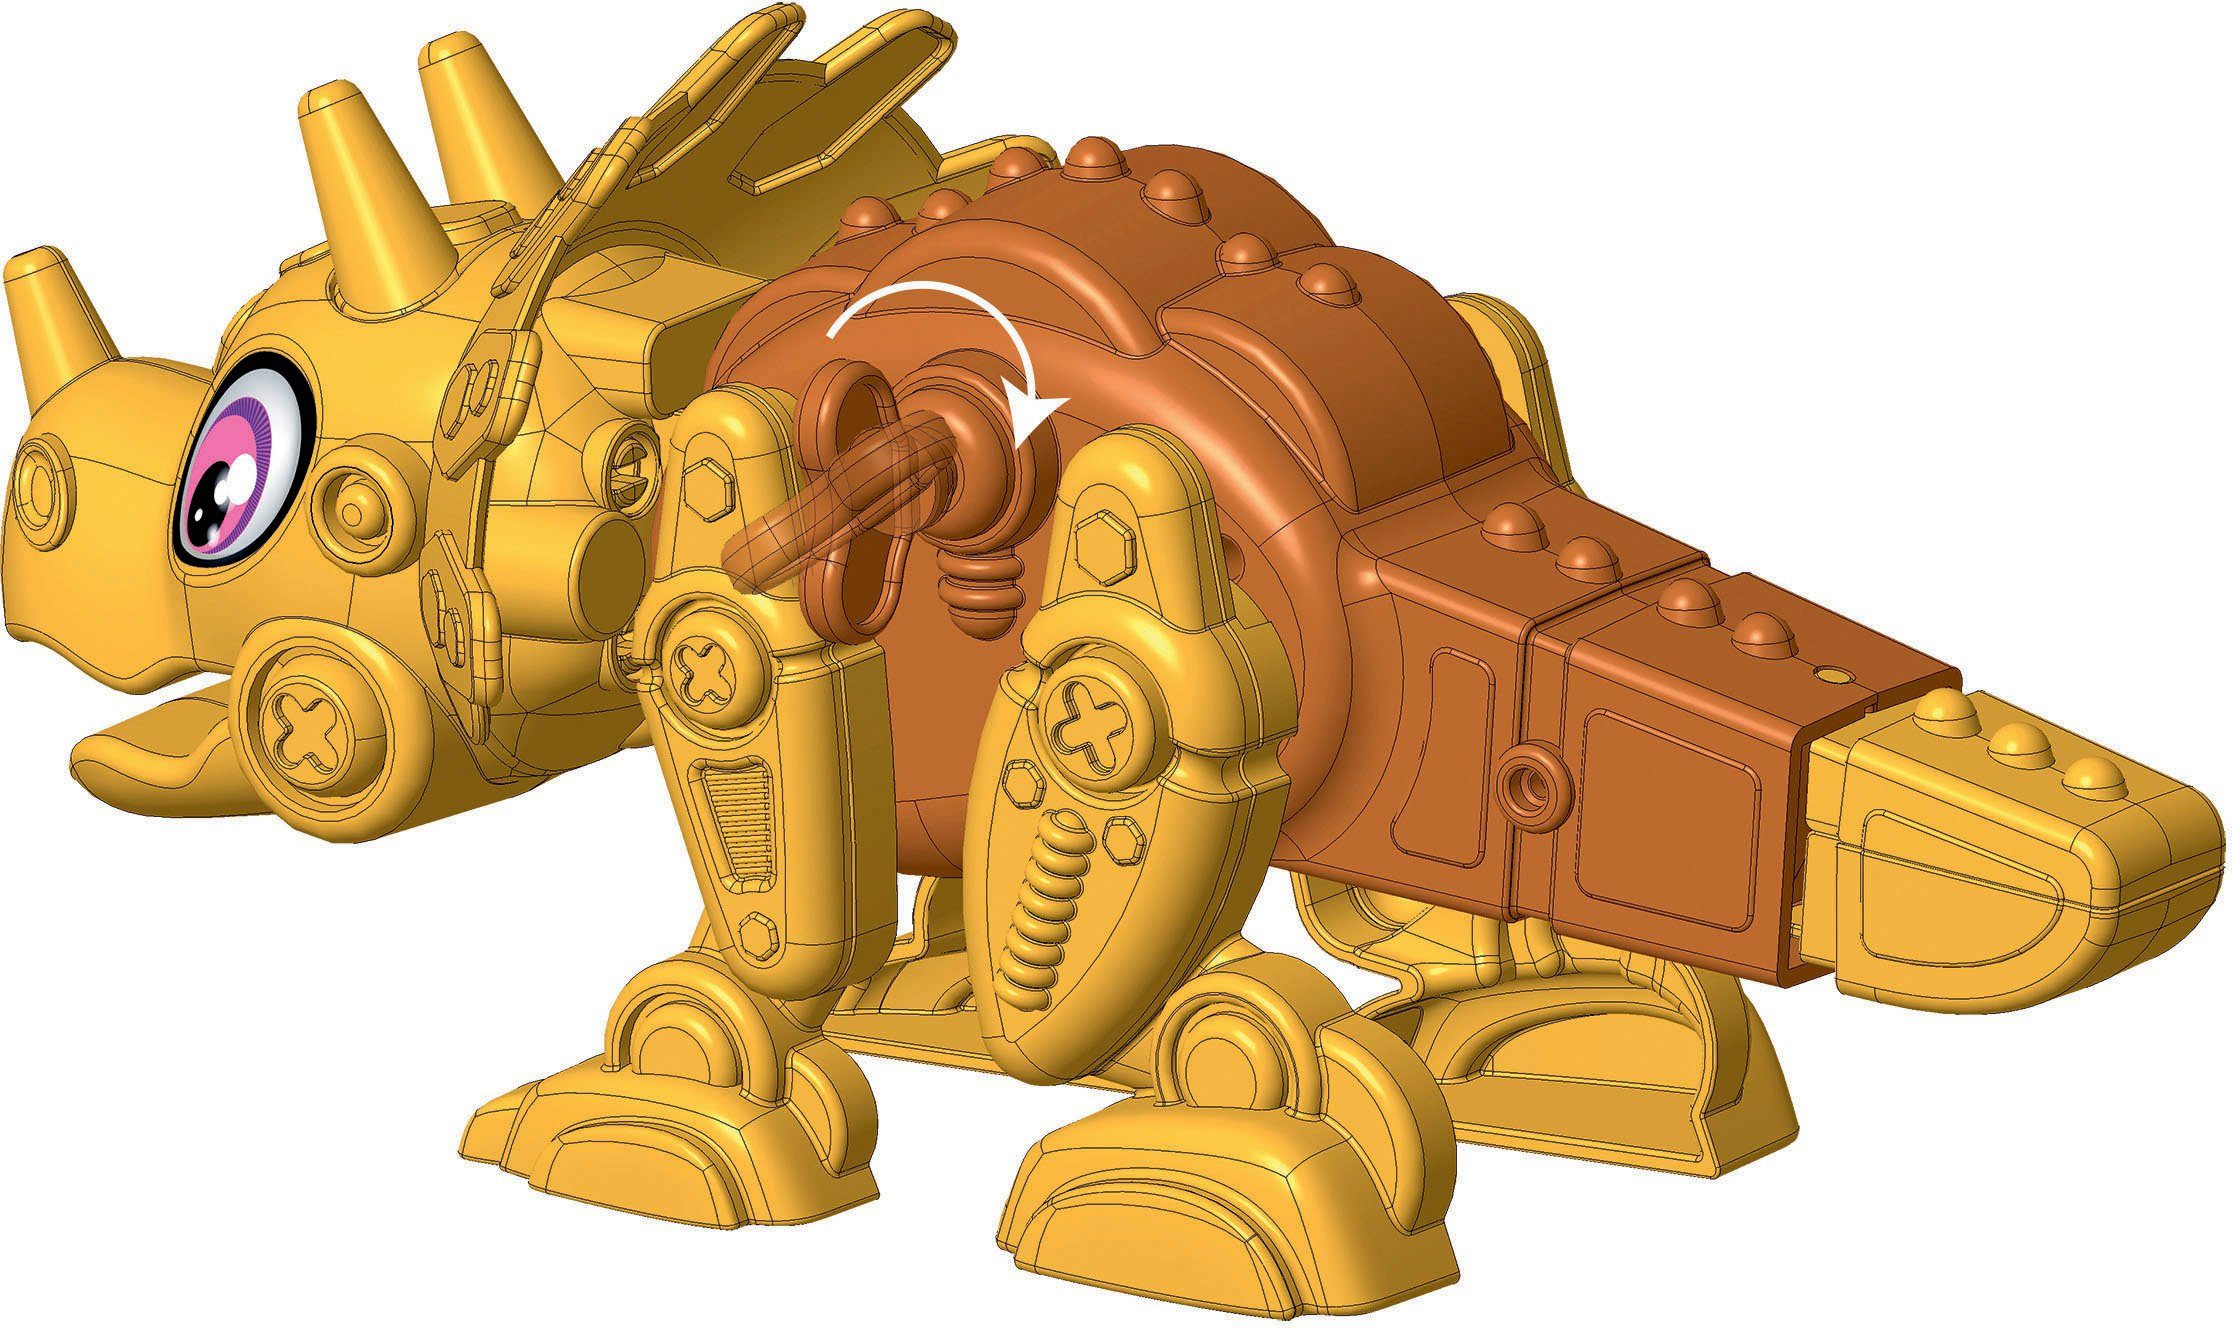 Clementoni® Roboter Made Galileo, DinoBot in Europe Triceratops